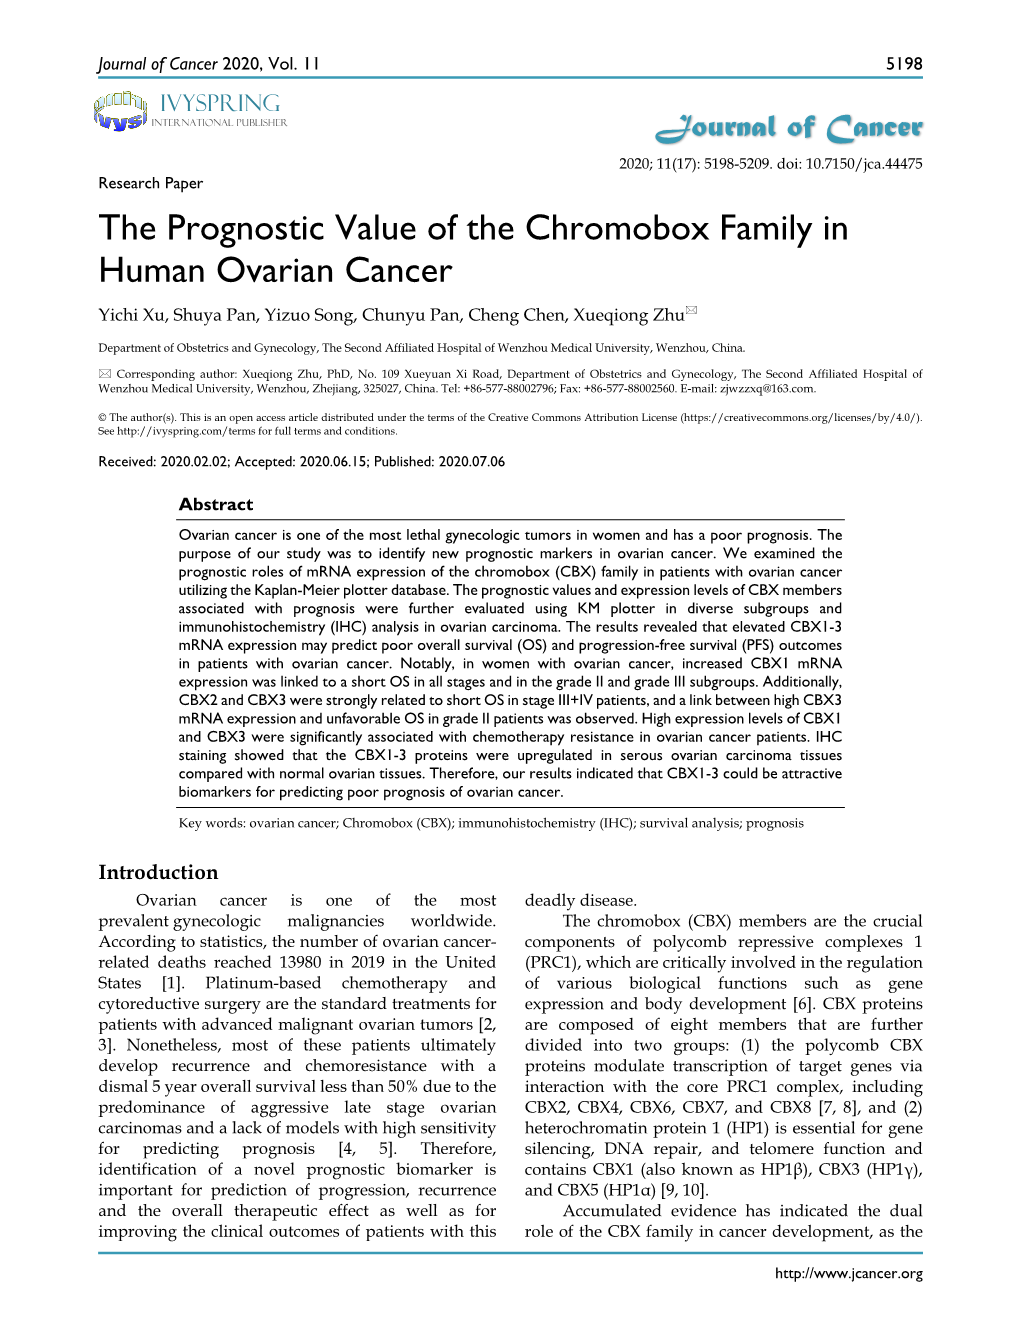 The Prognostic Value of the Chromobox Family in Human Ovarian Cancer Yichi Xu, Shuya Pan, Yizuo Song, Chunyu Pan, Cheng Chen, Xueqiong Zhu